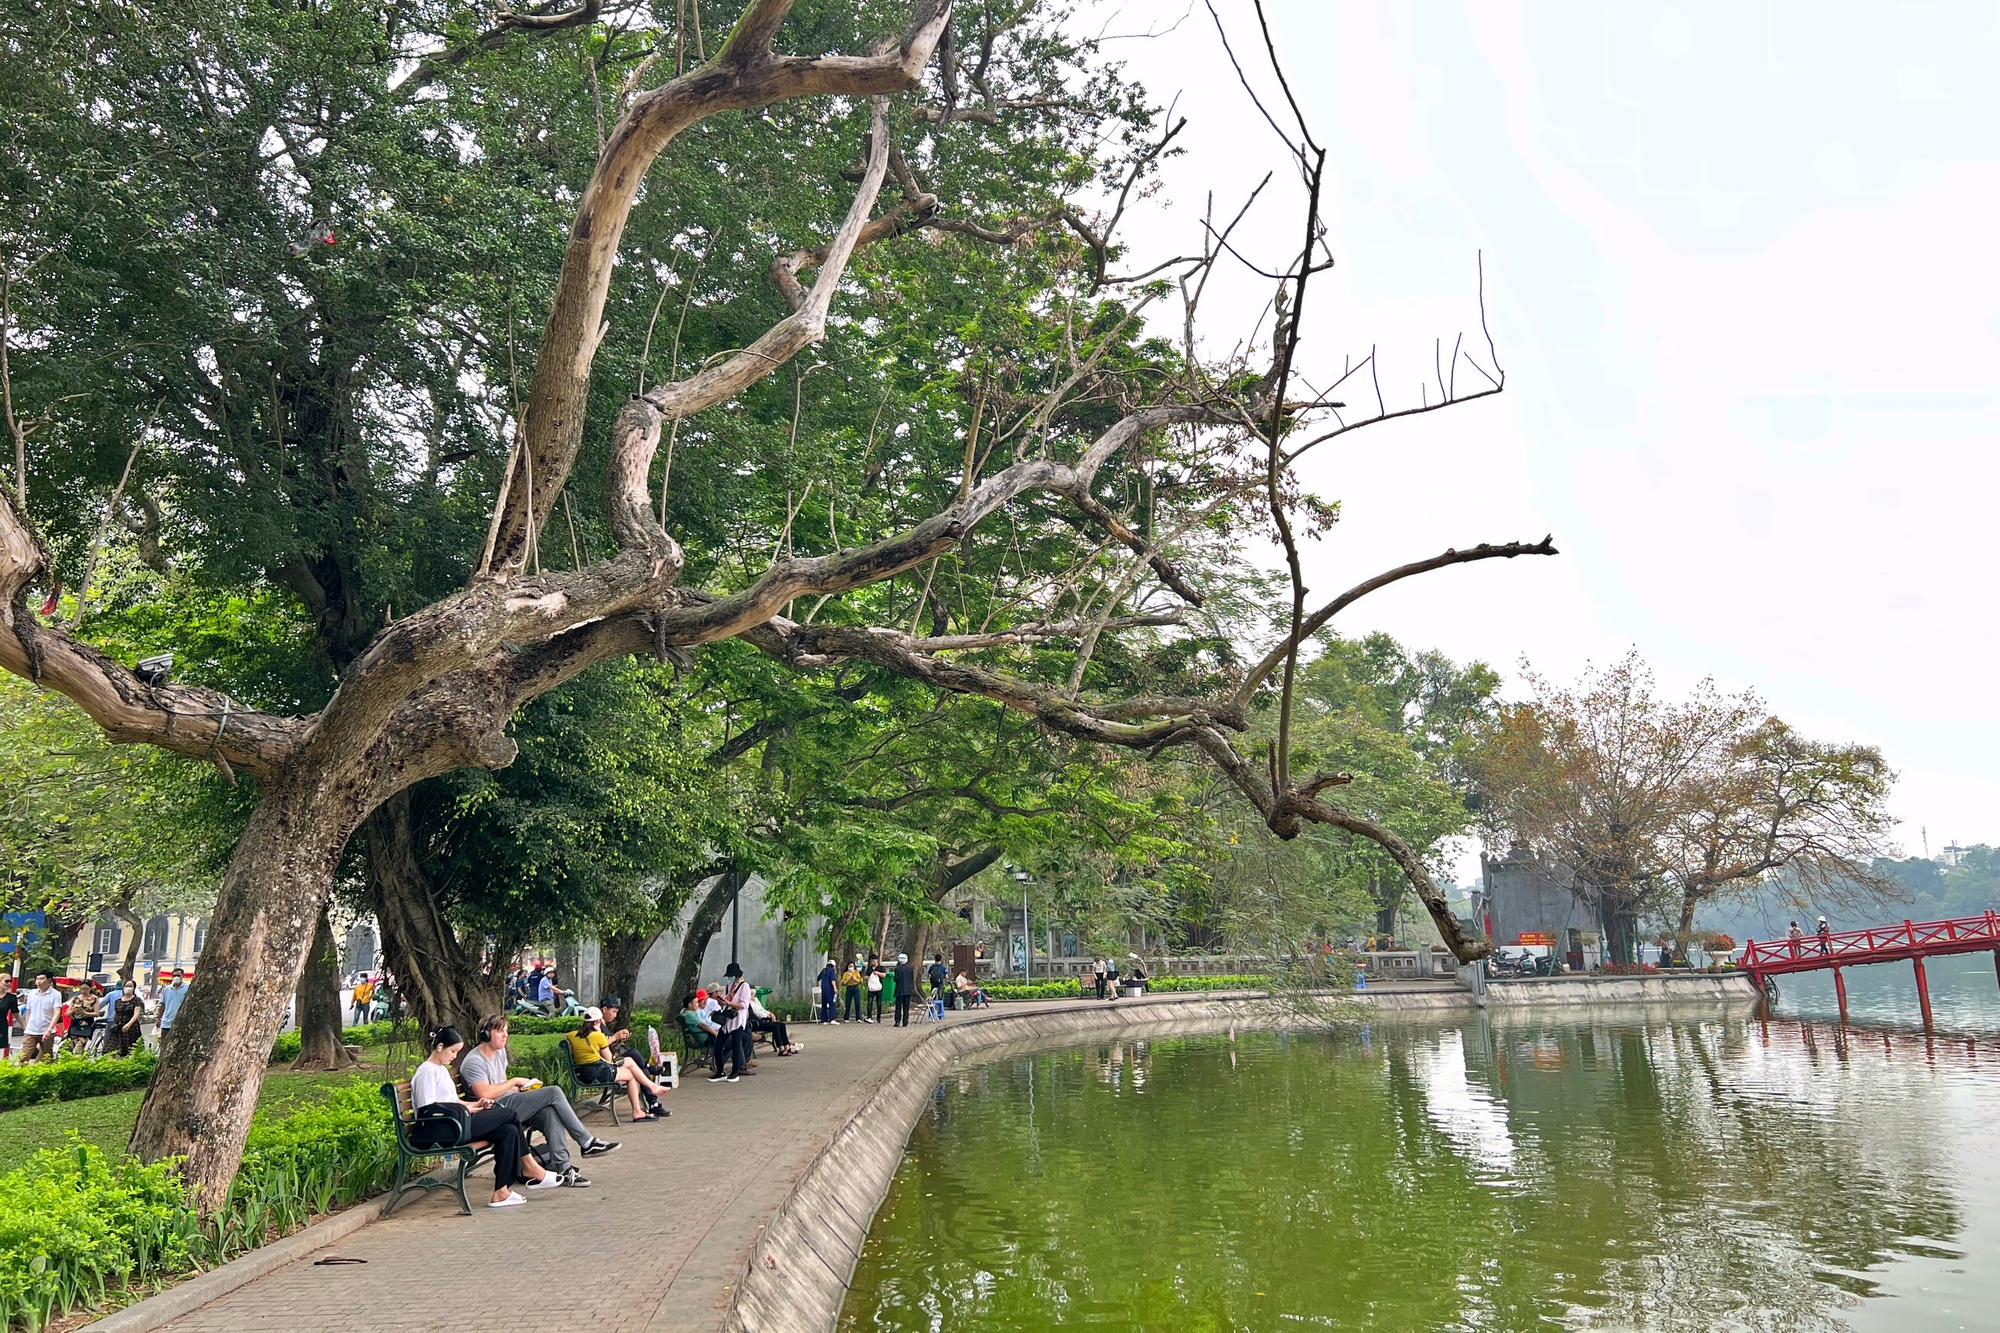 Chặt hạ cây sưa đỏ 100 năm tuổi ở hồ Hoàn Kiếm: Trồng thay thế cây gì phù hợp? - Ảnh 2.